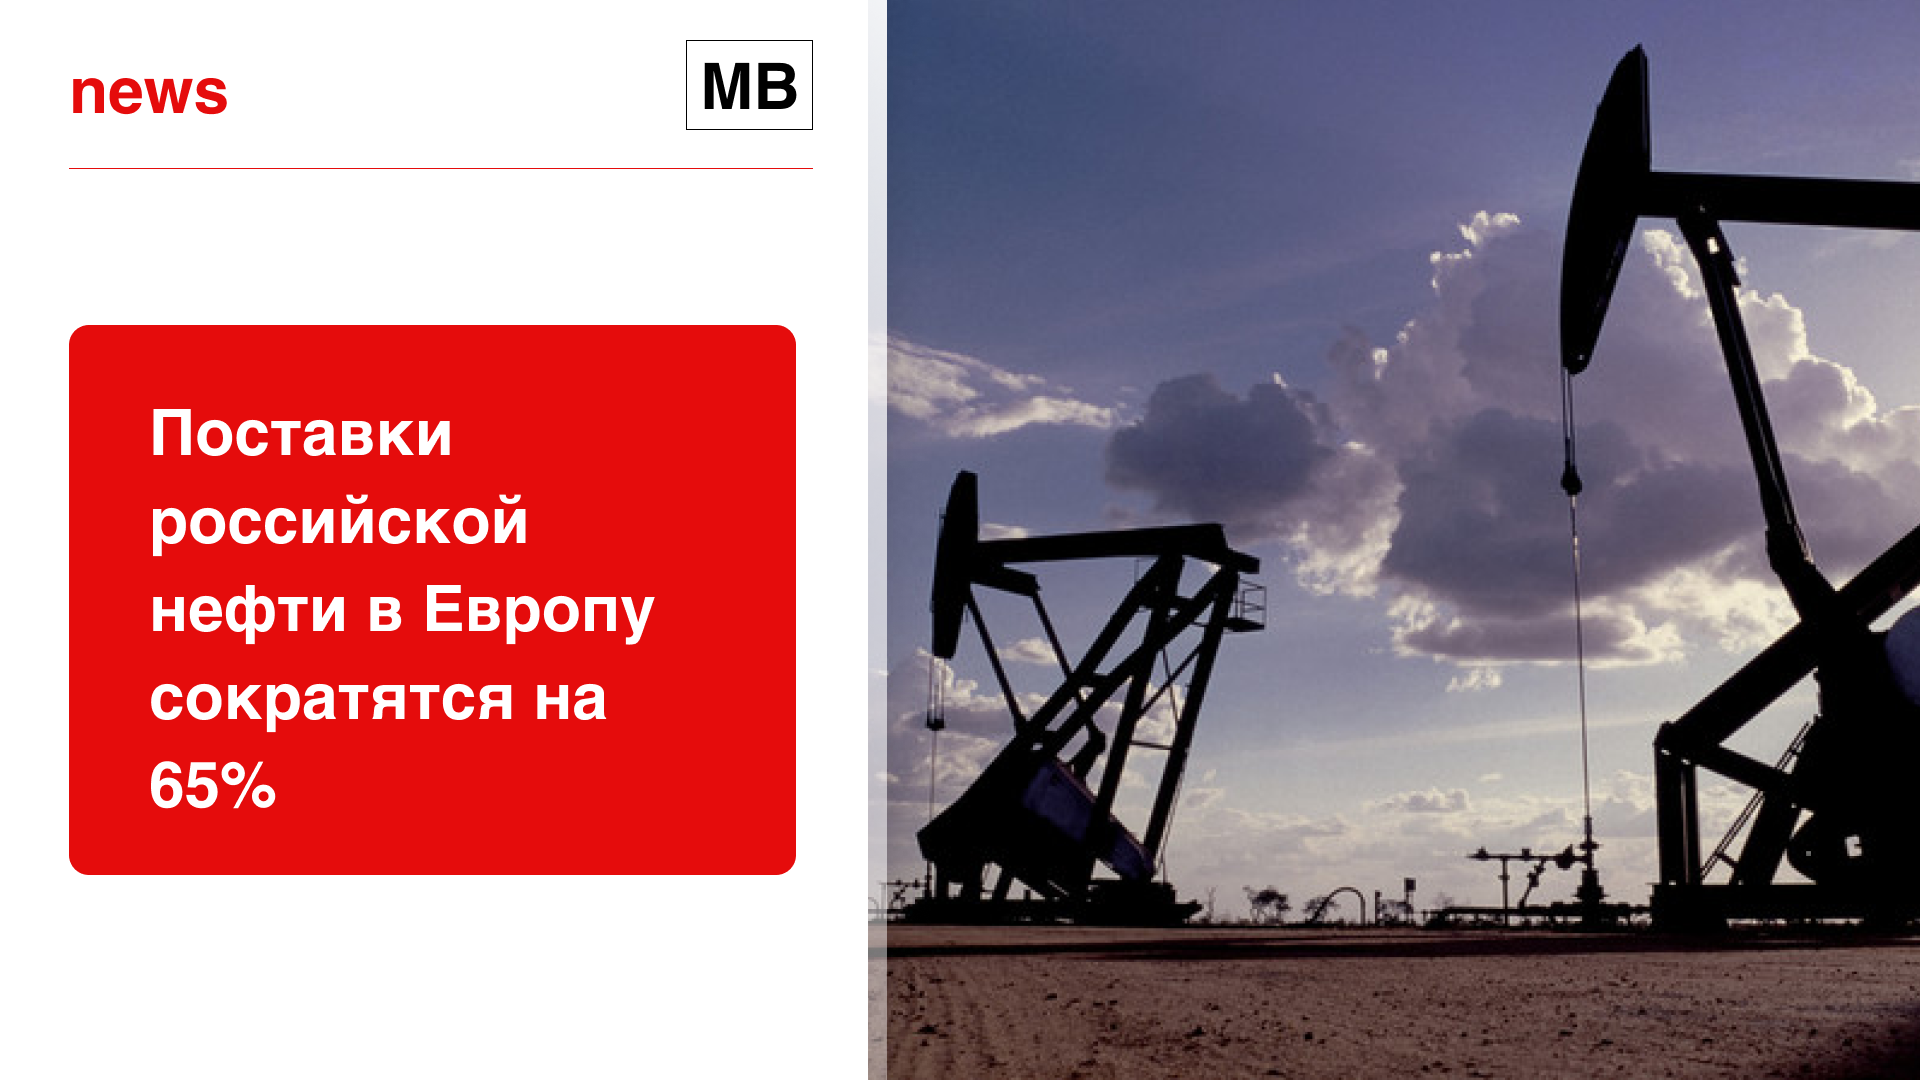 Поставки российской нефти в Европу сократятся на 65%